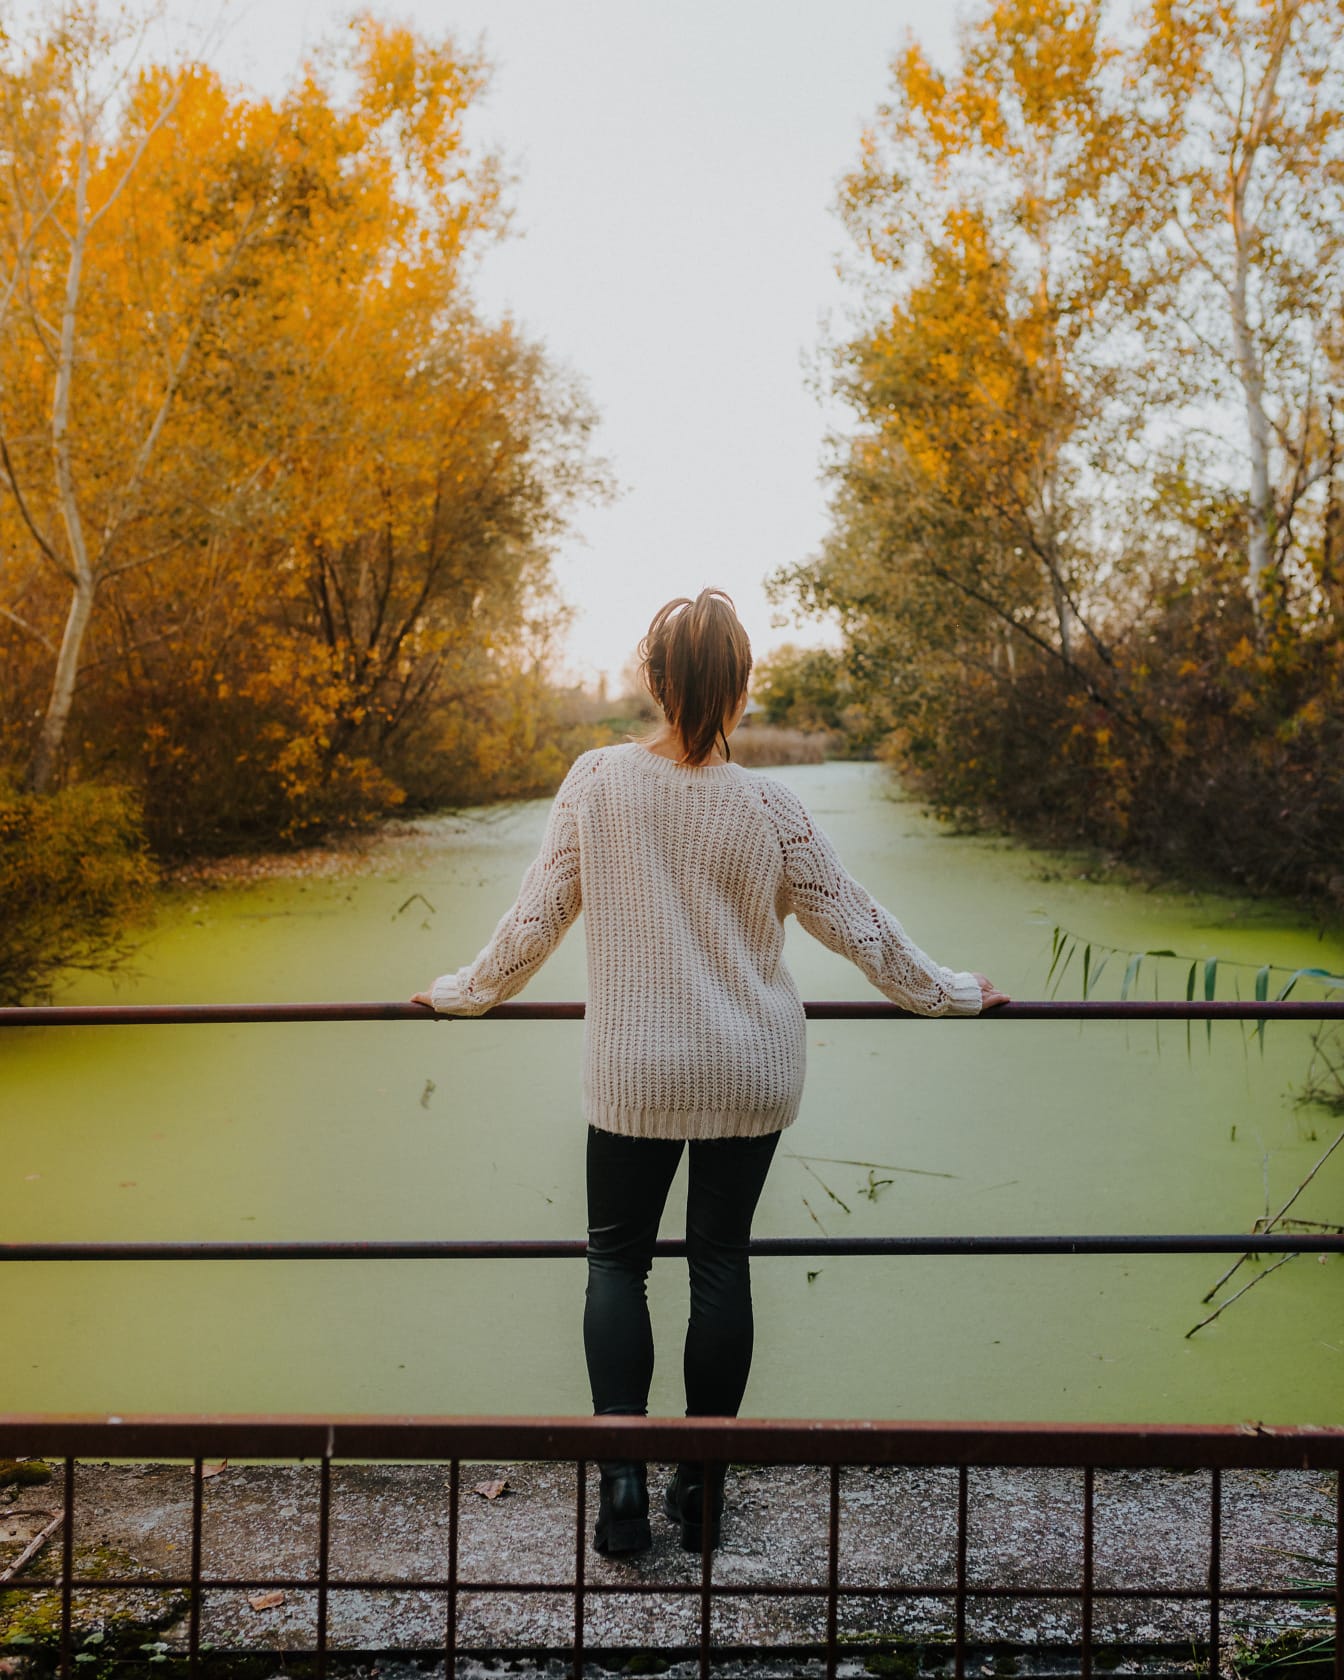 Žena vo vlnenom svetri na moste pre chodcov cez kanál